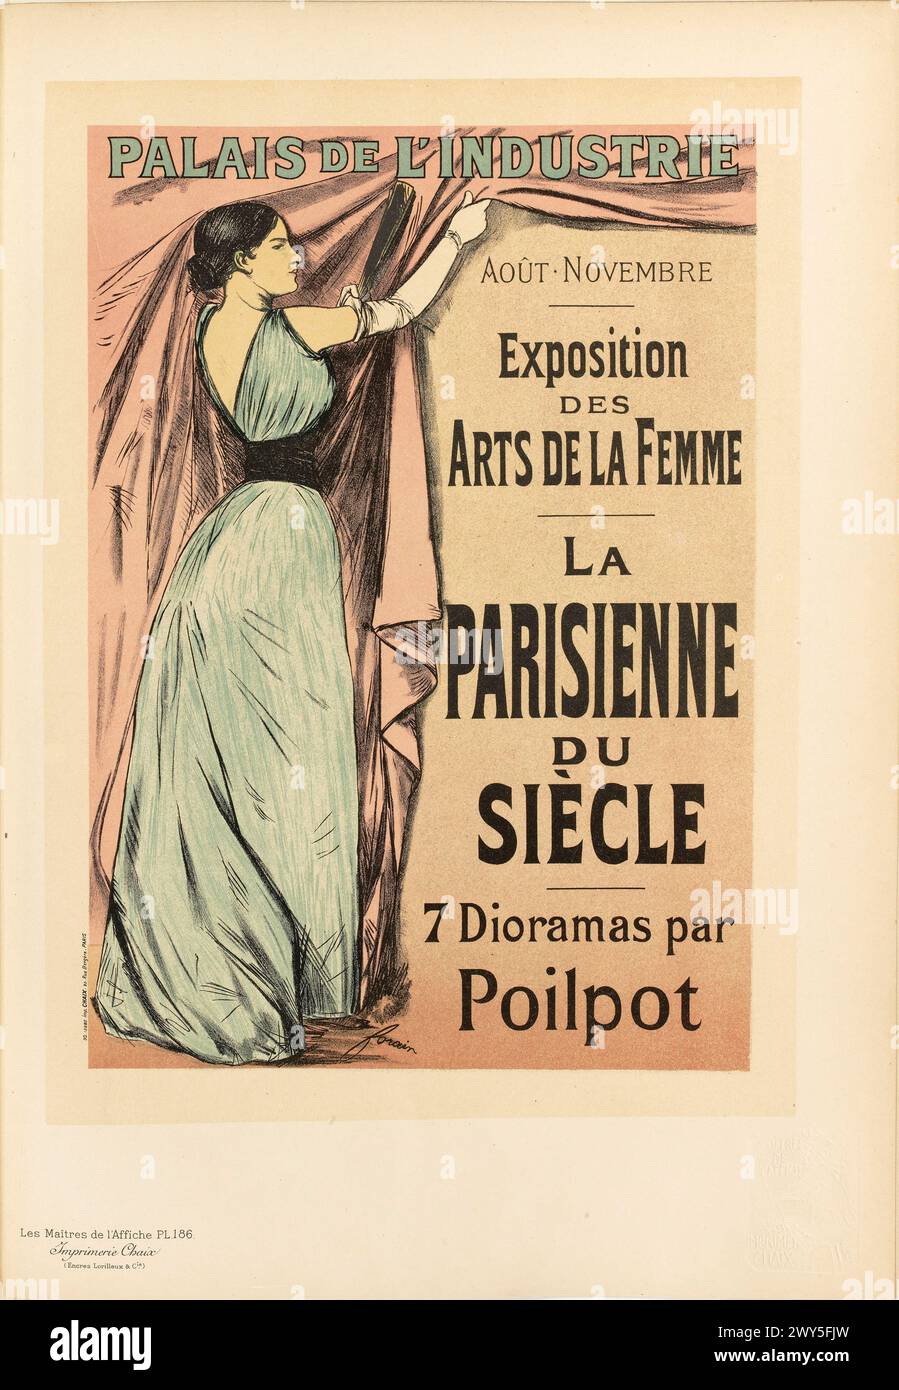 Poster 186 in Les Maîtres de l'Affiche  Jean-Louis Forain Stock Photo